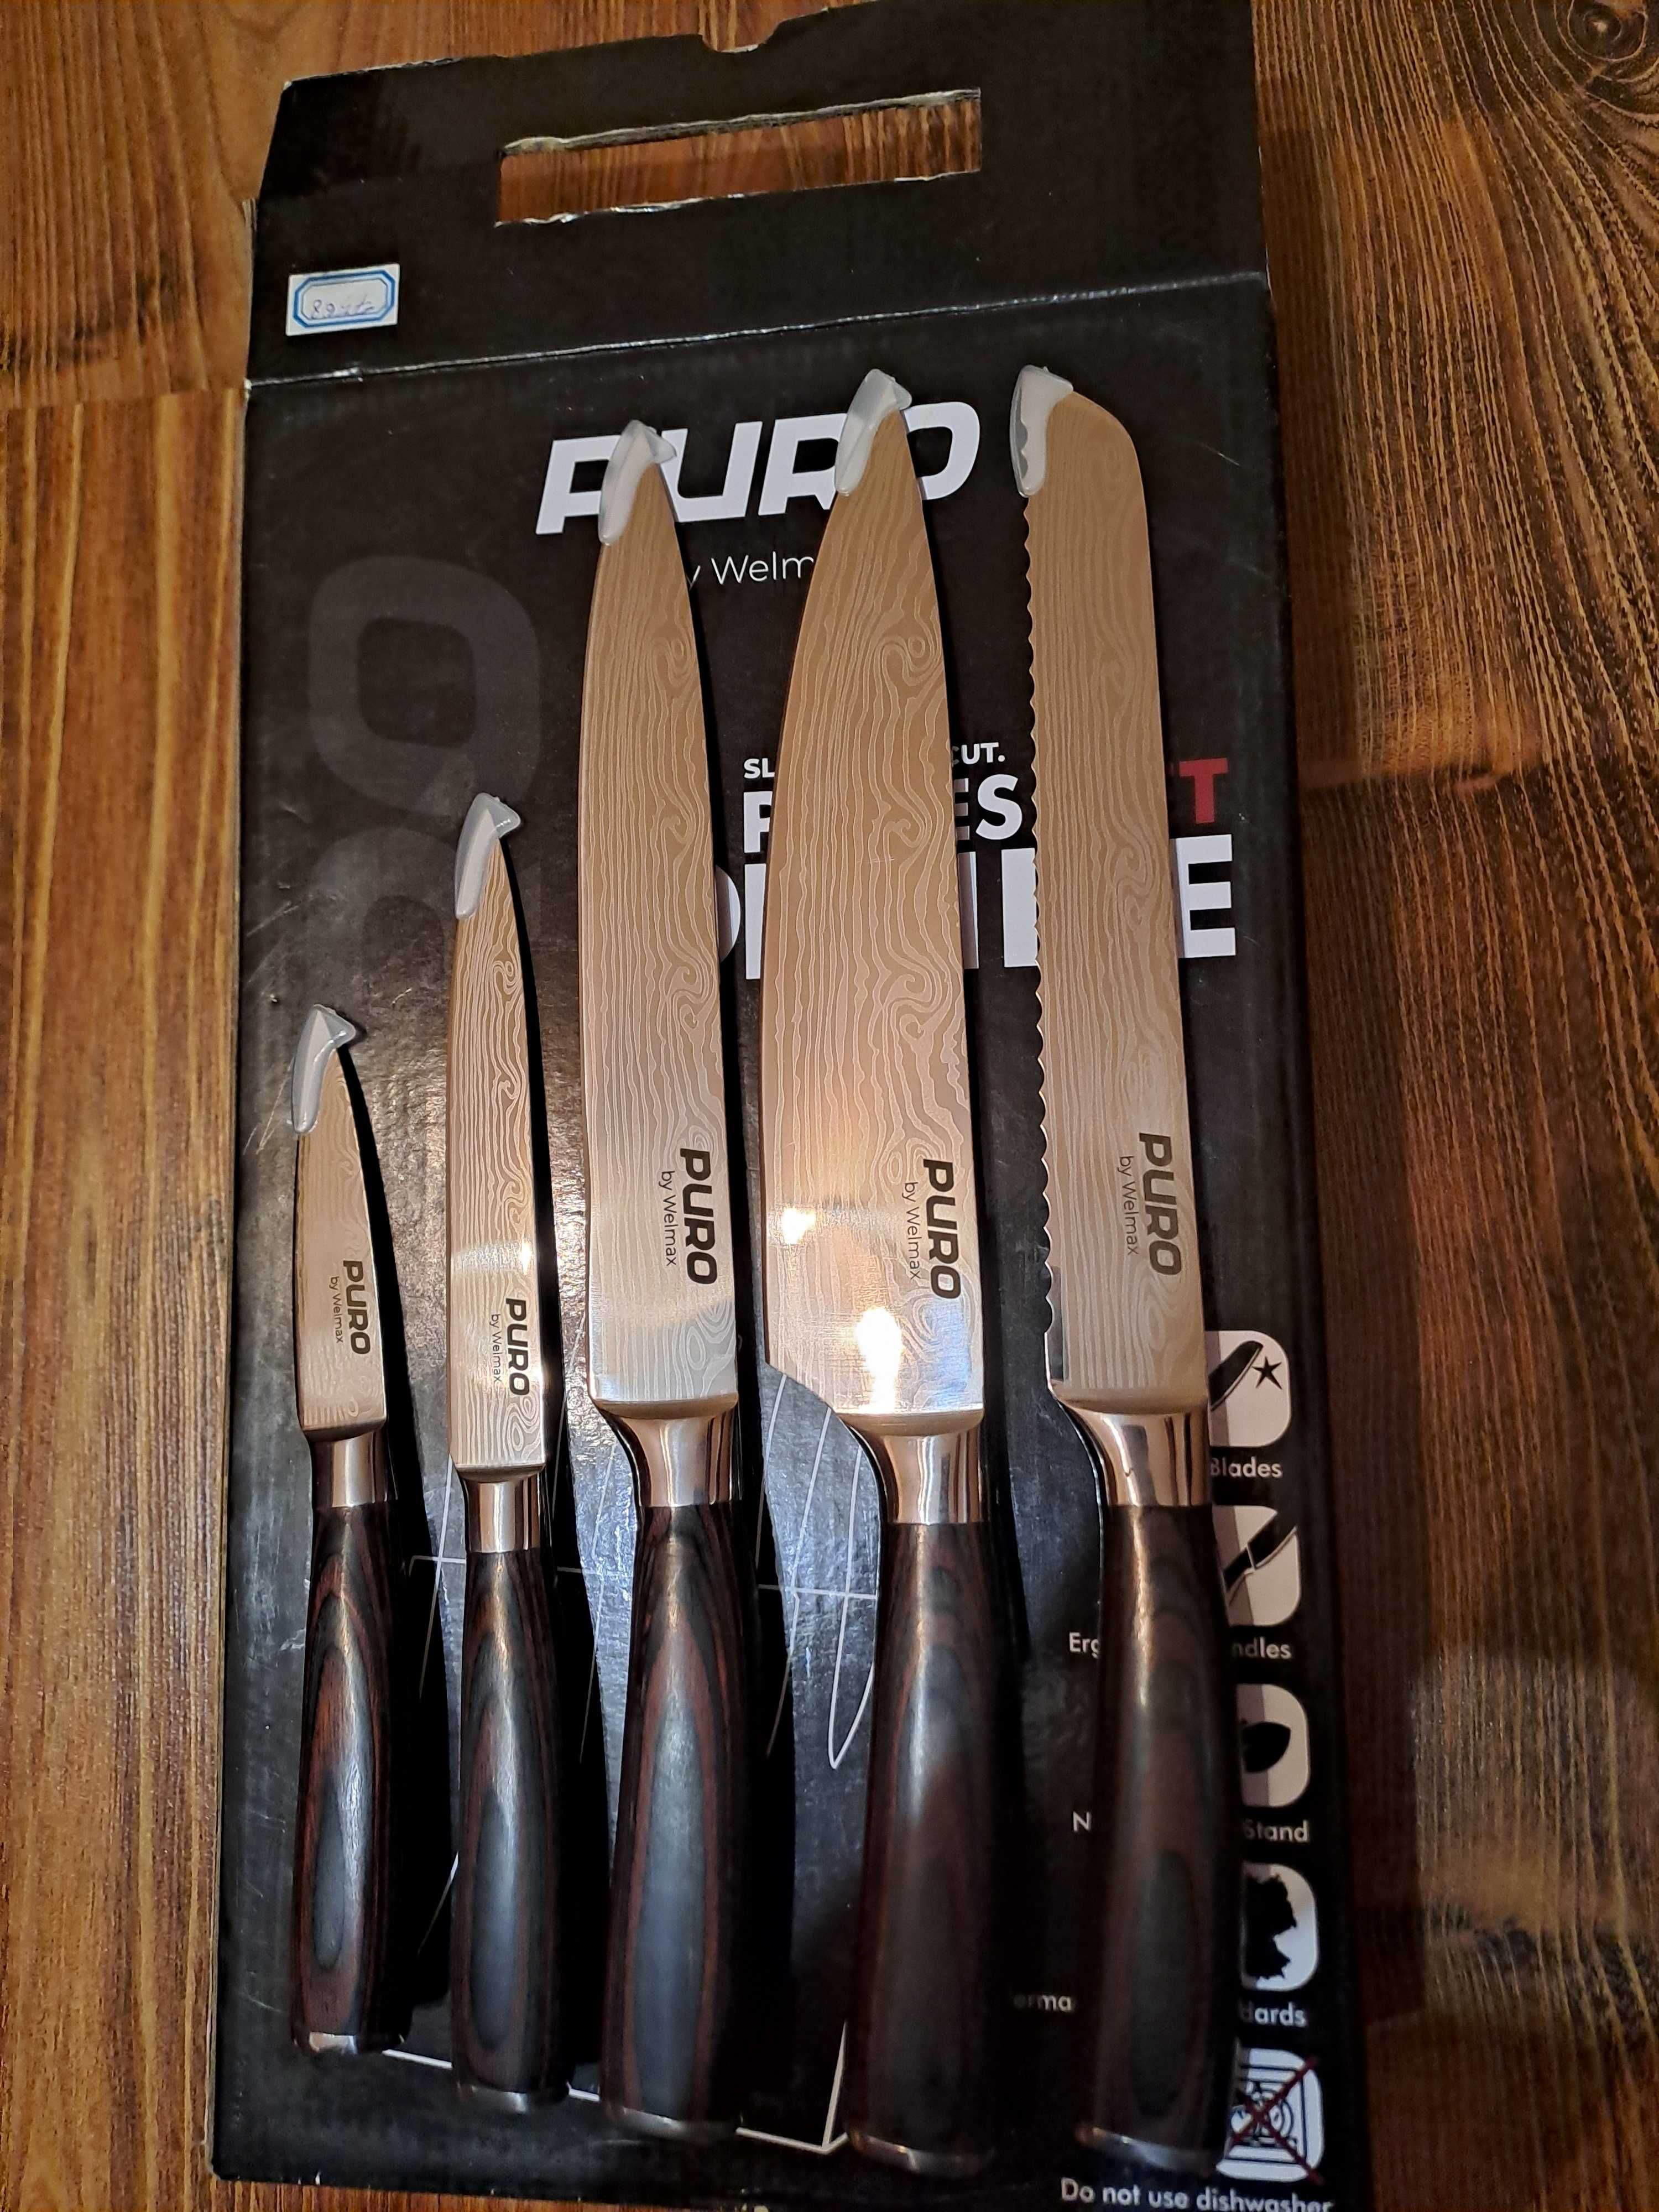 ЧИСТО НОВИ Puro Welmax - комплект ножове